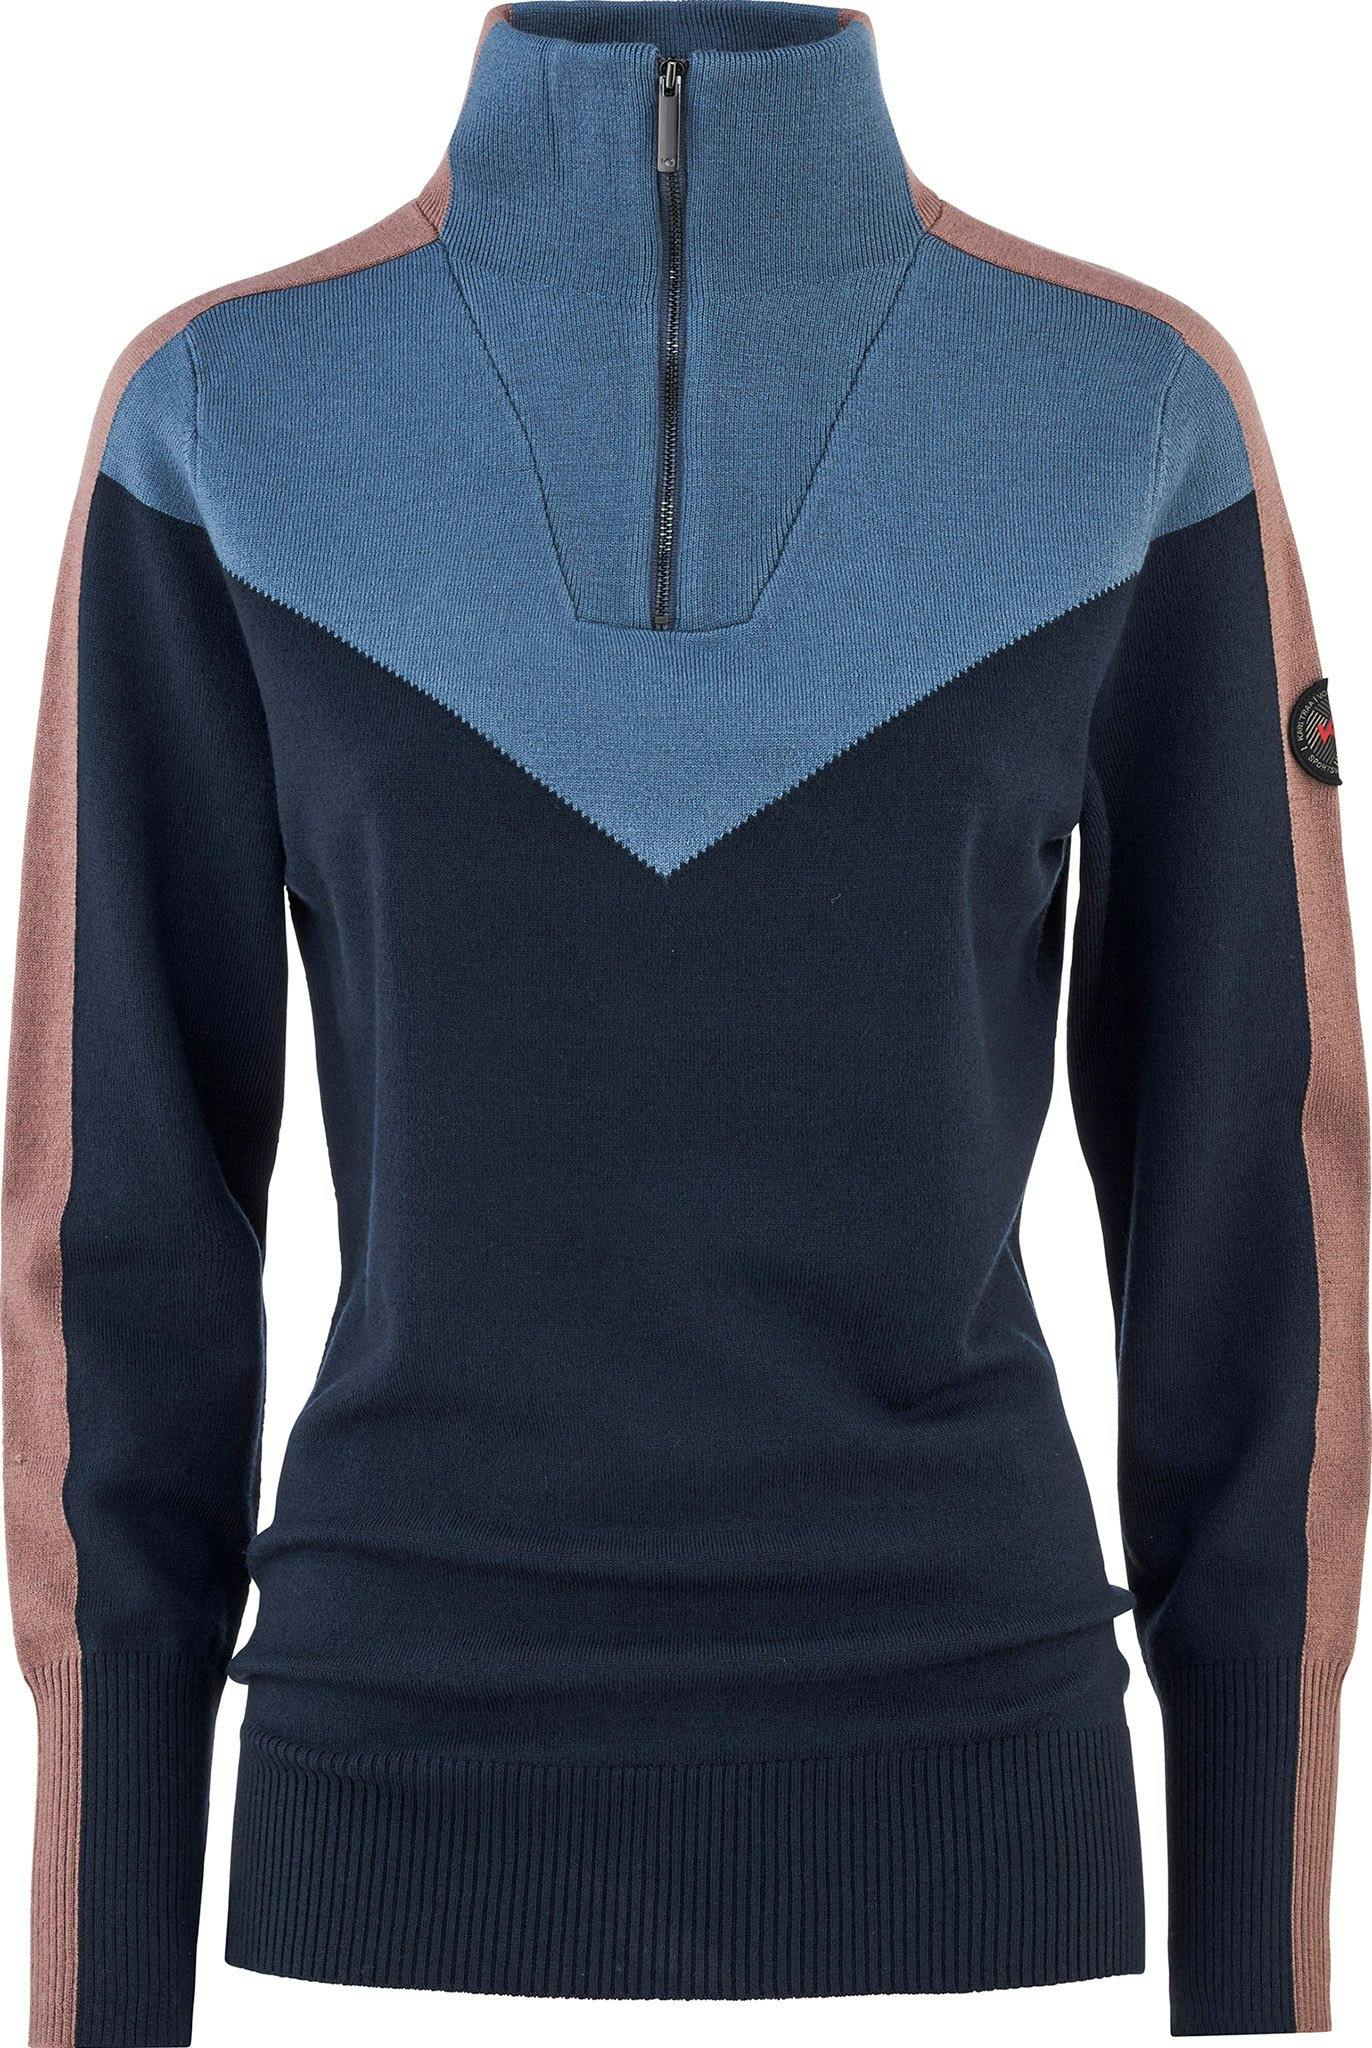 Image de produit pour Chandail à demi-glissière en tricot Voss - Femme